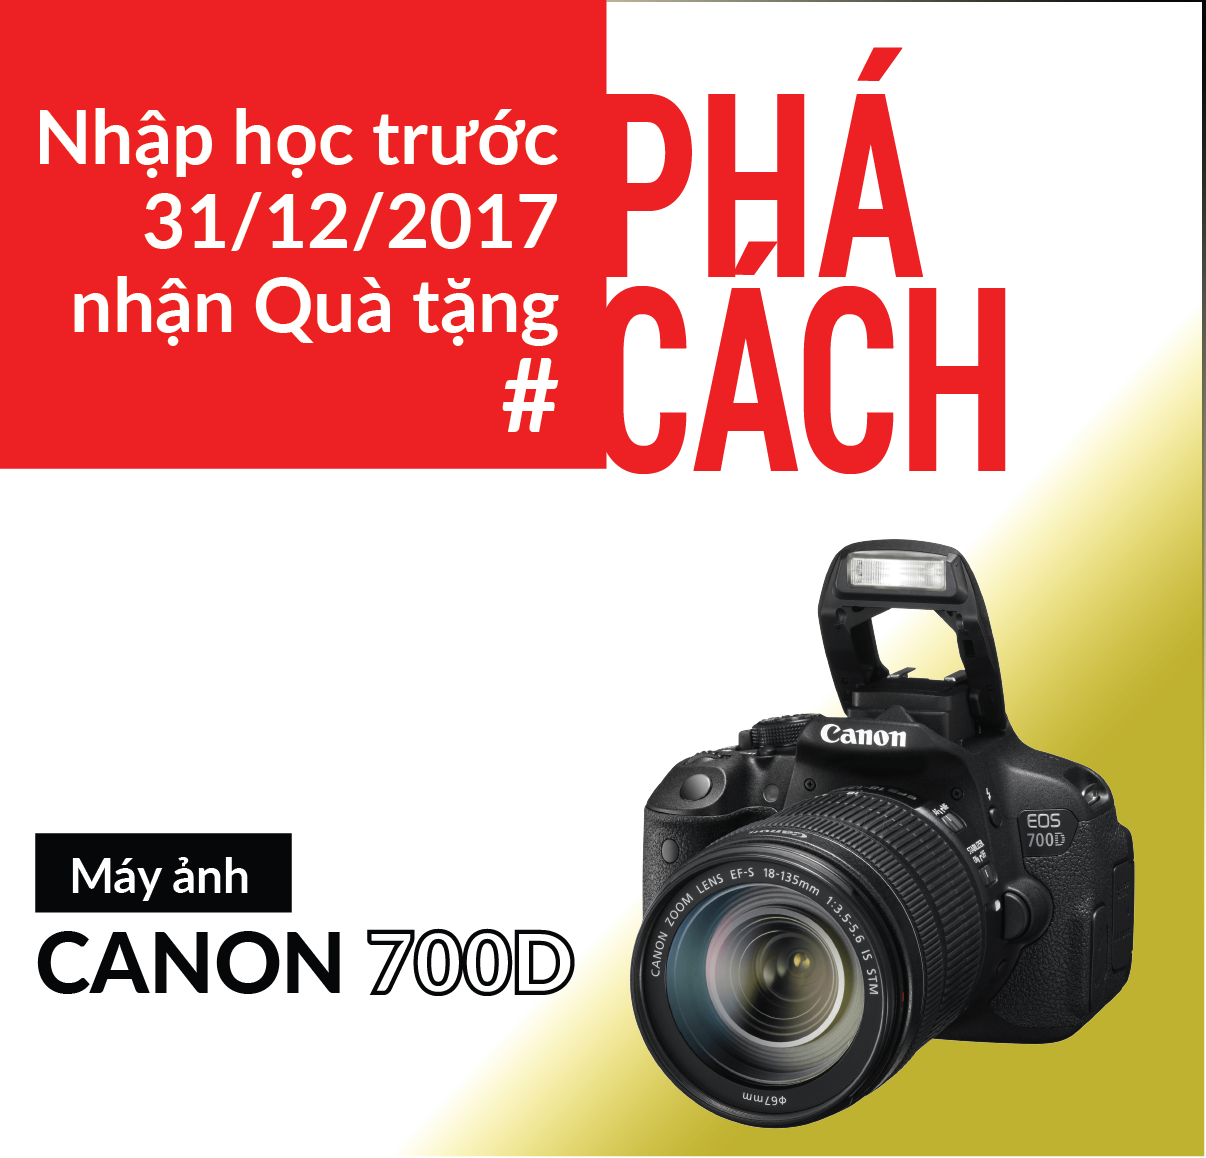 Camera Canon 700D